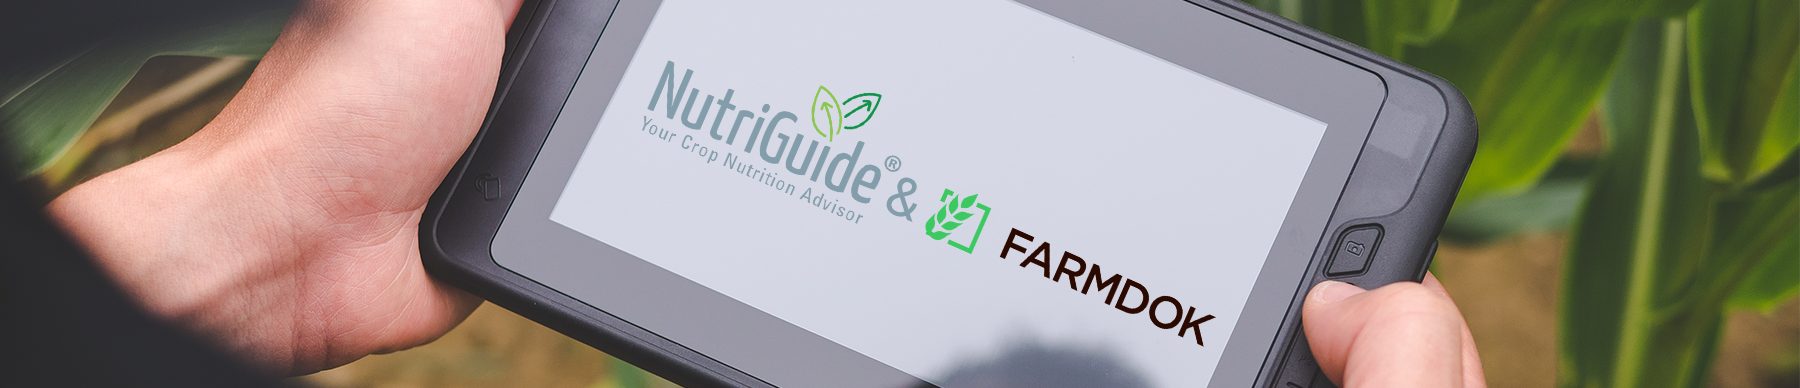 Tablet-Farmdok-NutriGuide